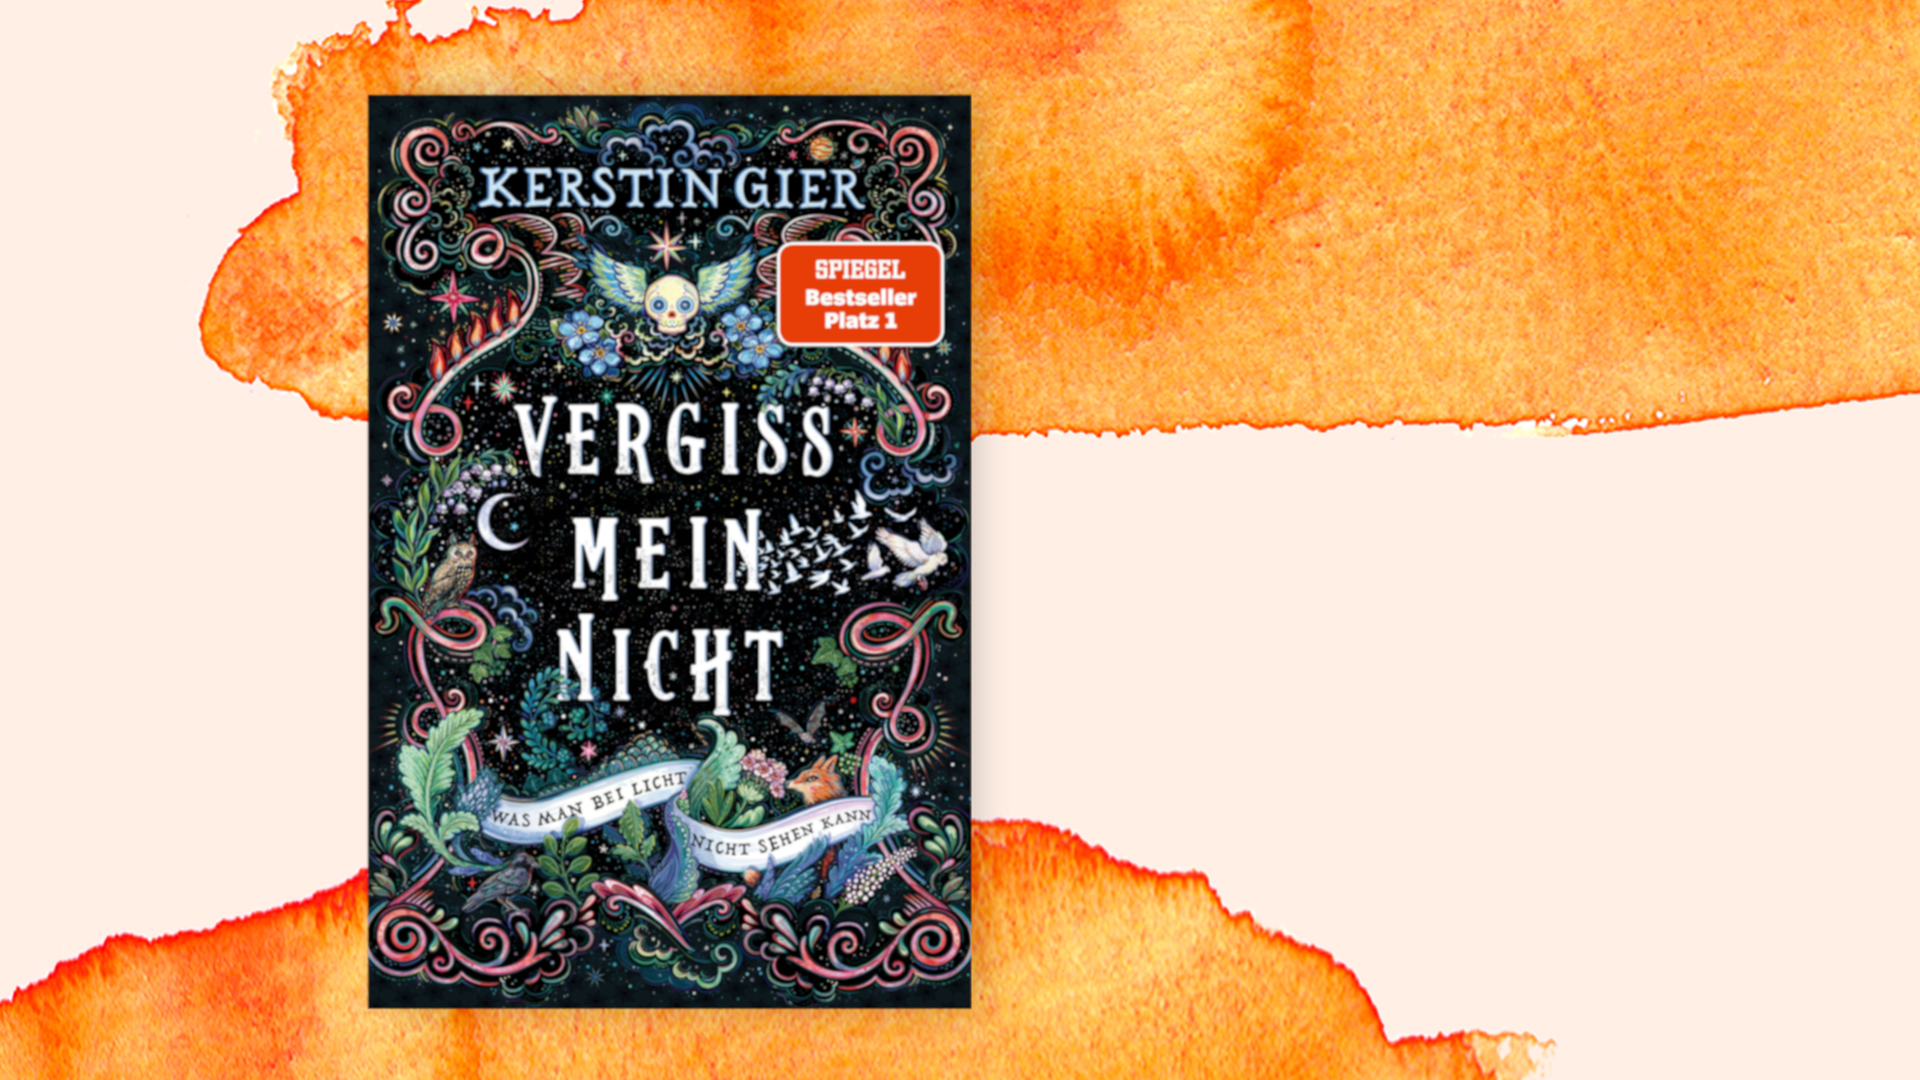 Den schwarzen Buchumschlag von Kerstin Giers Roman "Vergissmeinnicht" zieren ein geflügelter Totenkopf, rankende Ornamente sowie der Schriftzug "Was man bei Licht nicht sehen kann".